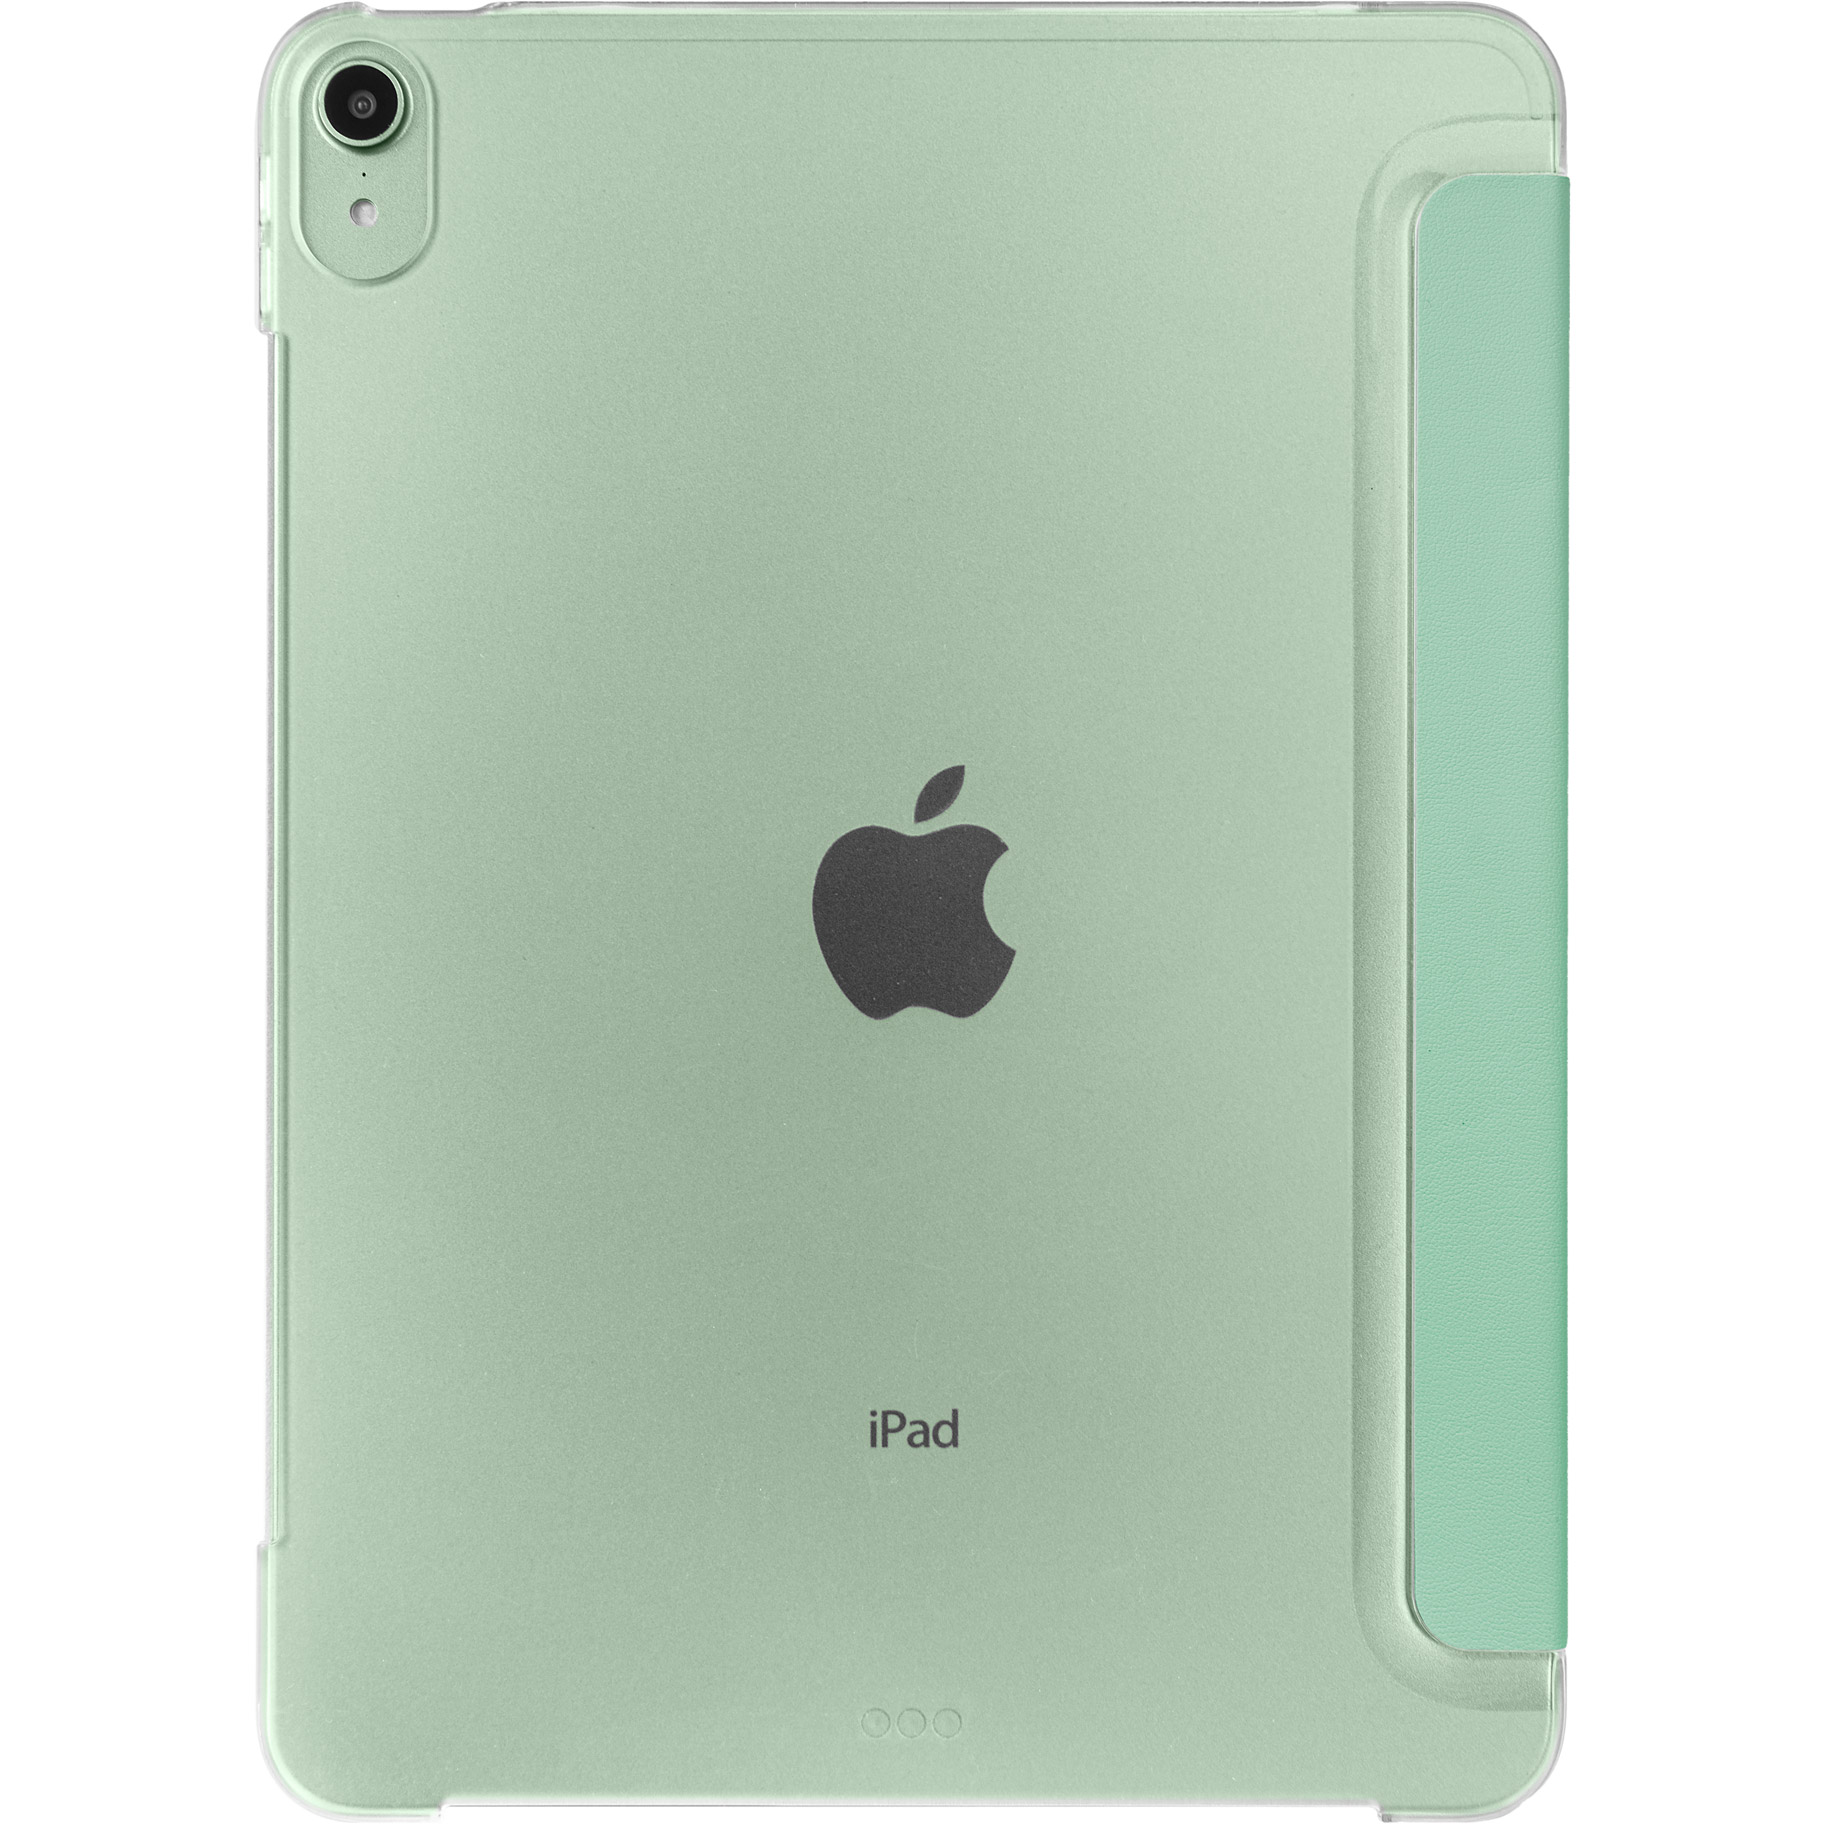 【Wi-Fi専用】iPad Air4 10.9インチ (256GB) グリーン